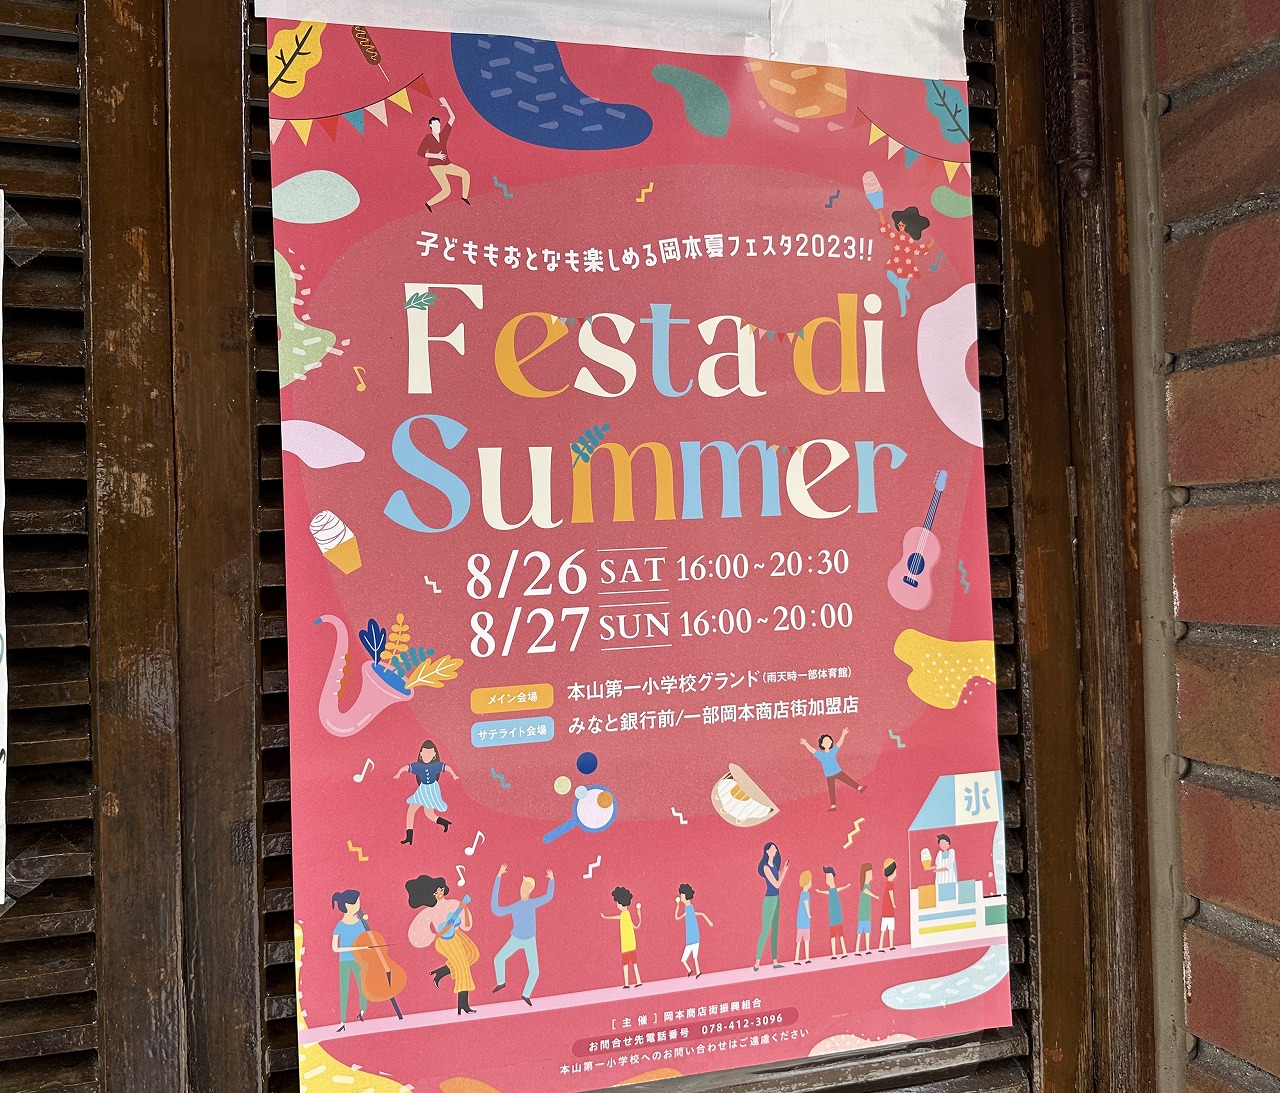 岡本商店街、4年ぶりに『Festa di Summer』